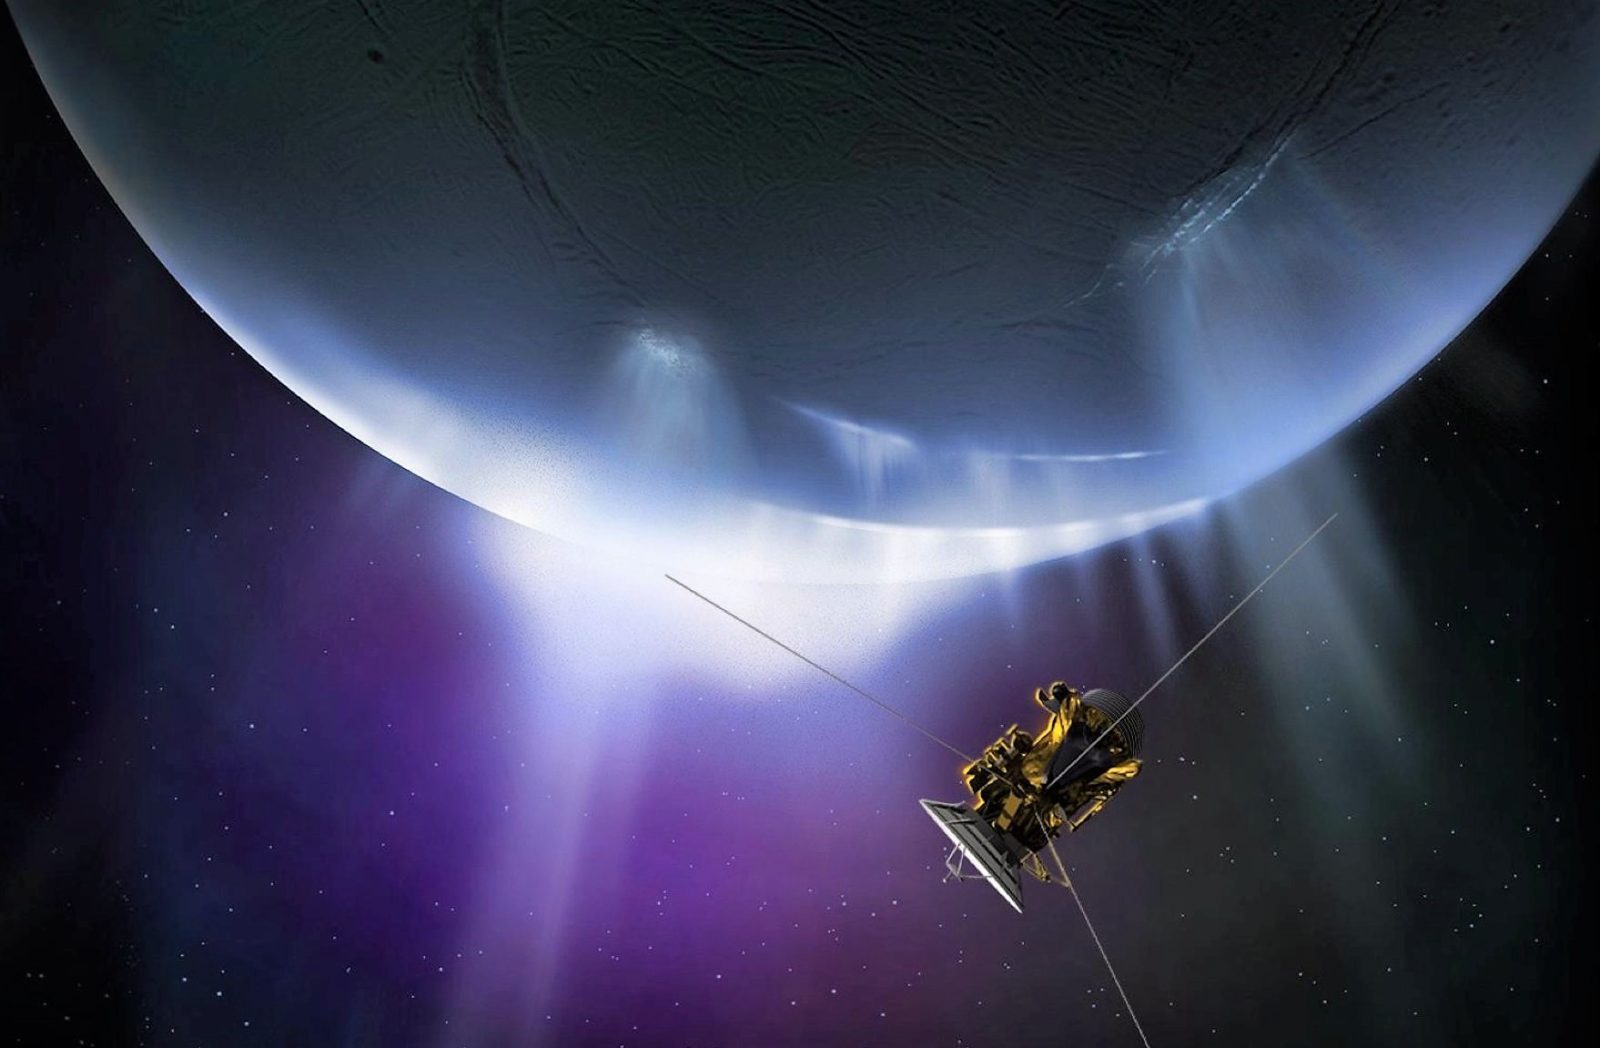 La NASA halla indicios de «vida extraterrestre» en Encelado, luna de Saturno (Video)